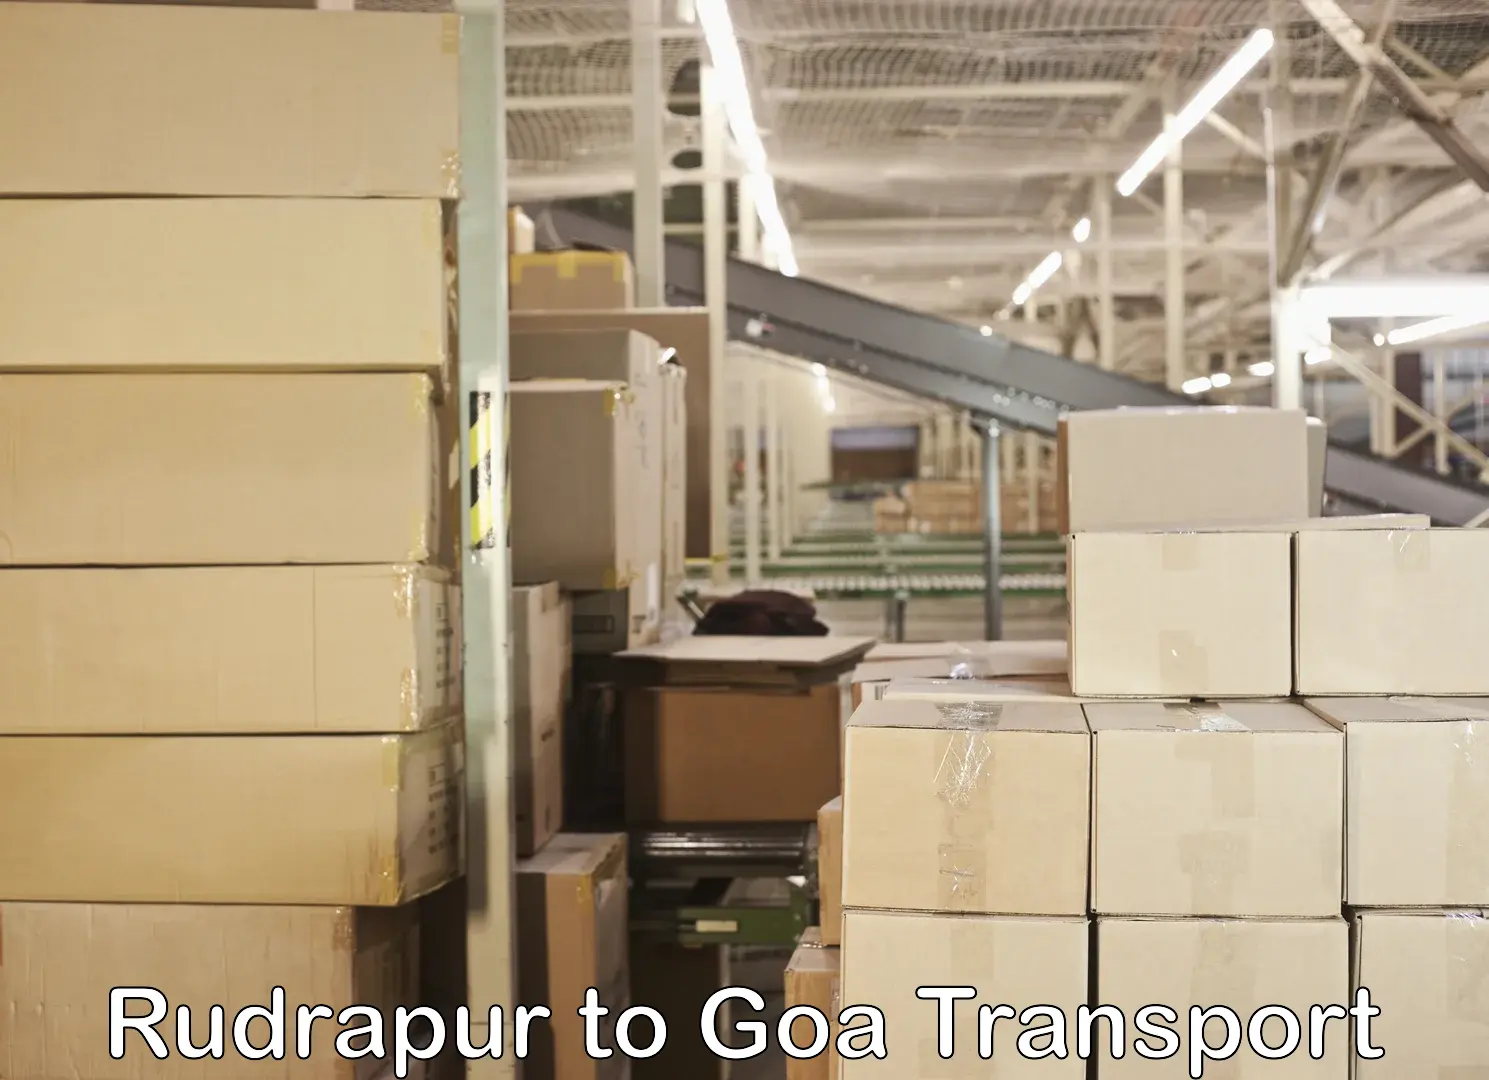 Land transport services Rudrapur to Mormugao Port